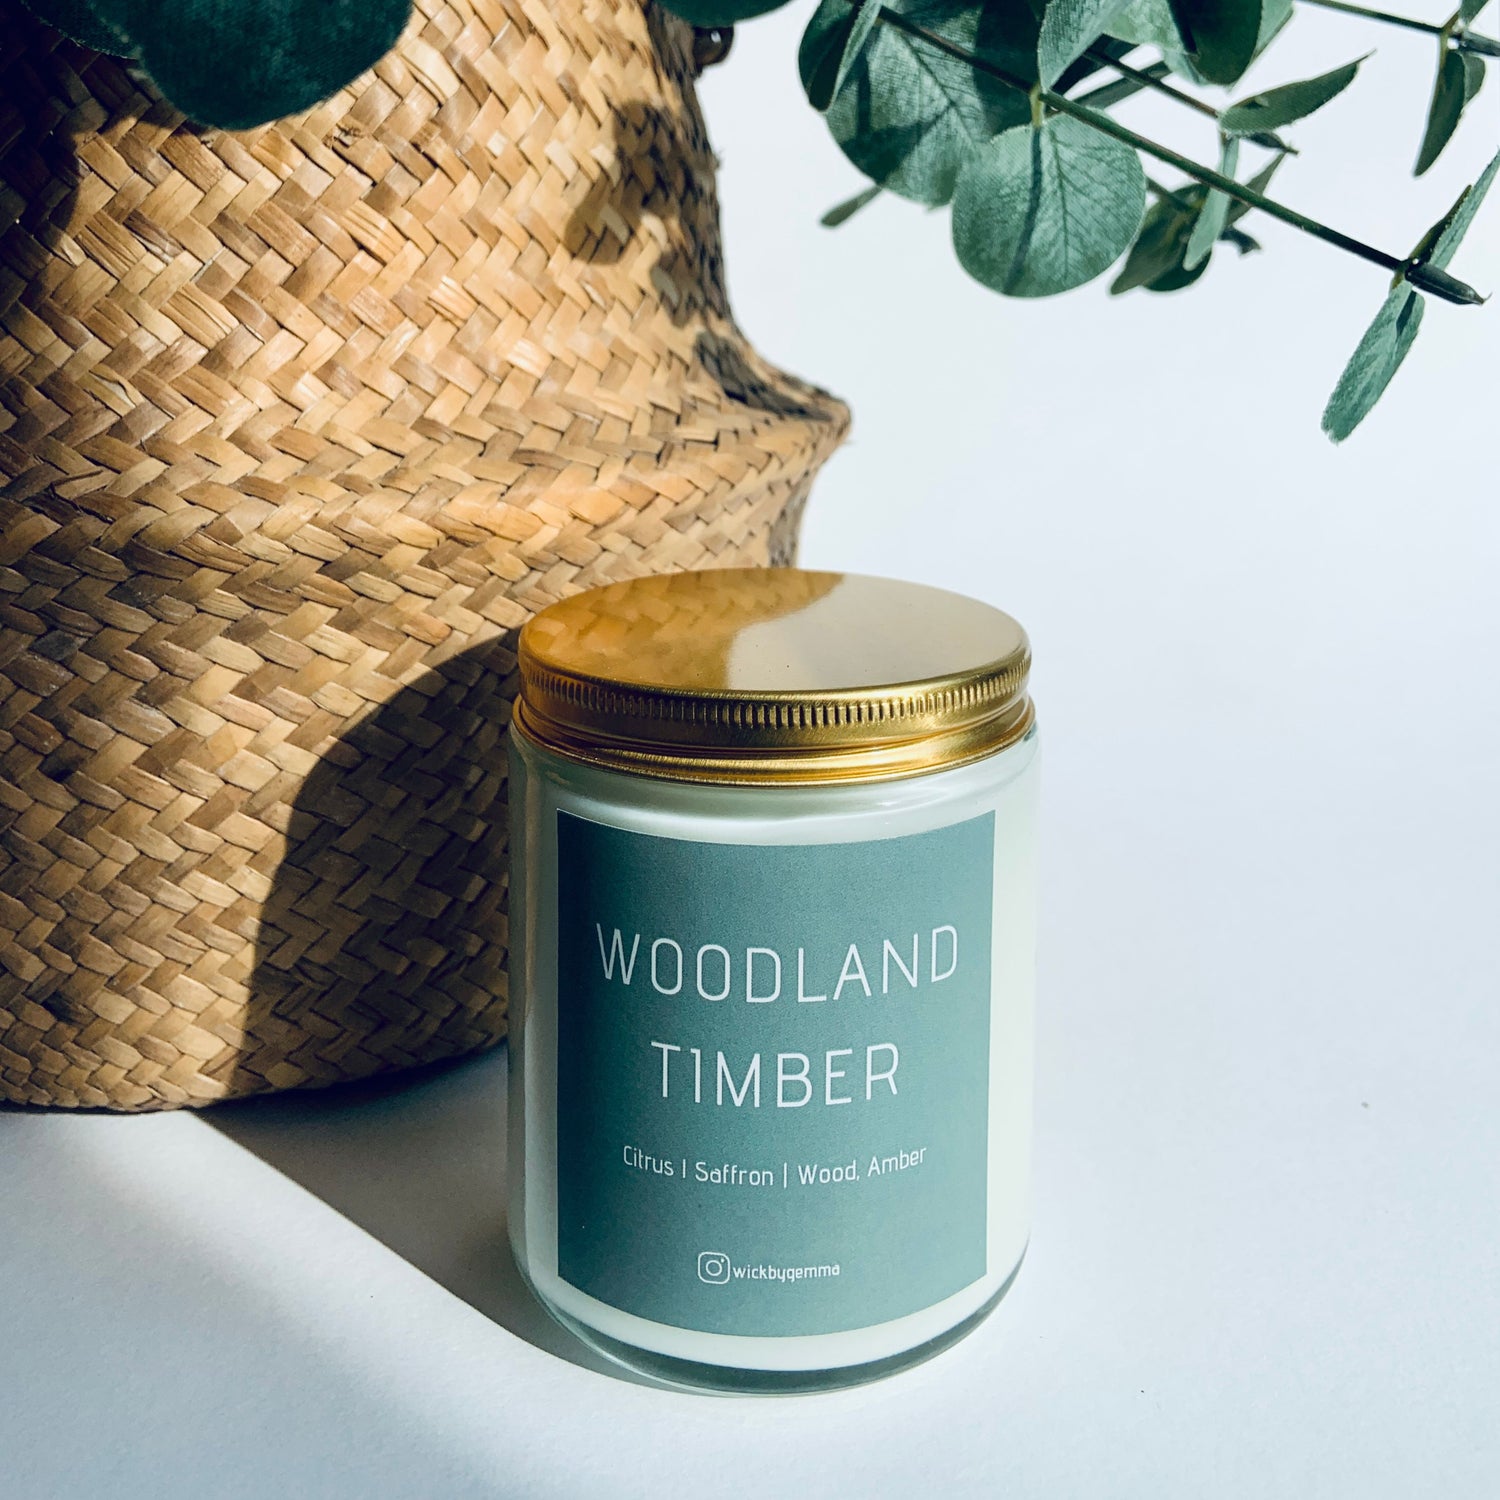 Woodland Timber